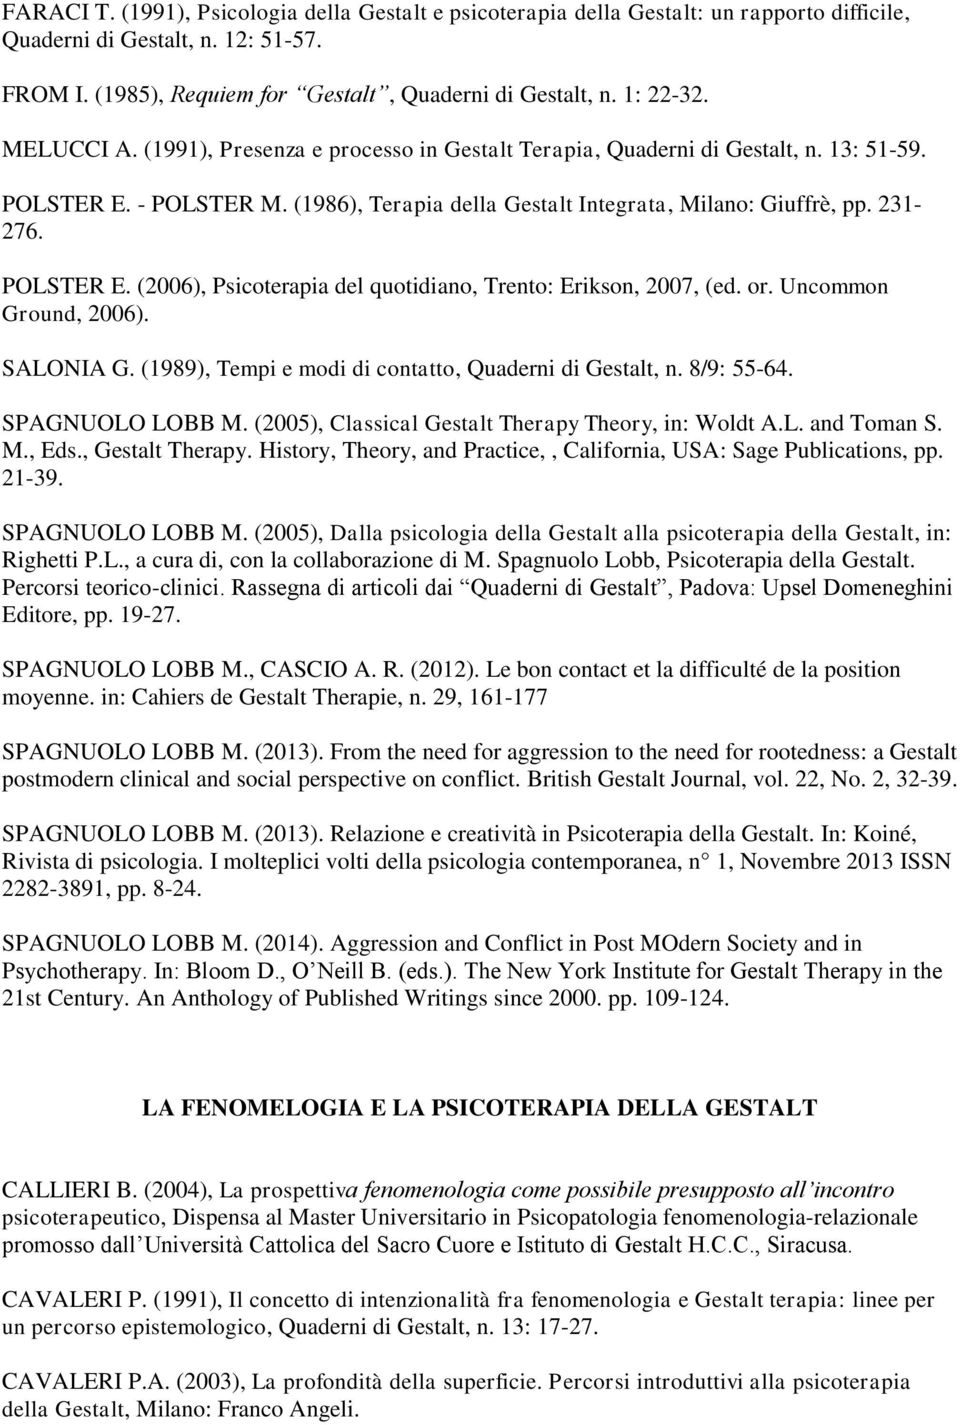 POLSTER E. (2006), Psicoterapia del quotidiano, Trento: Erikson, 2007, (ed. or. Uncommon Ground, 2006). SALONIA G. (1989), Tempi e modi di contatto, Quaderni di Gestalt, n. 8/9: 55-64.